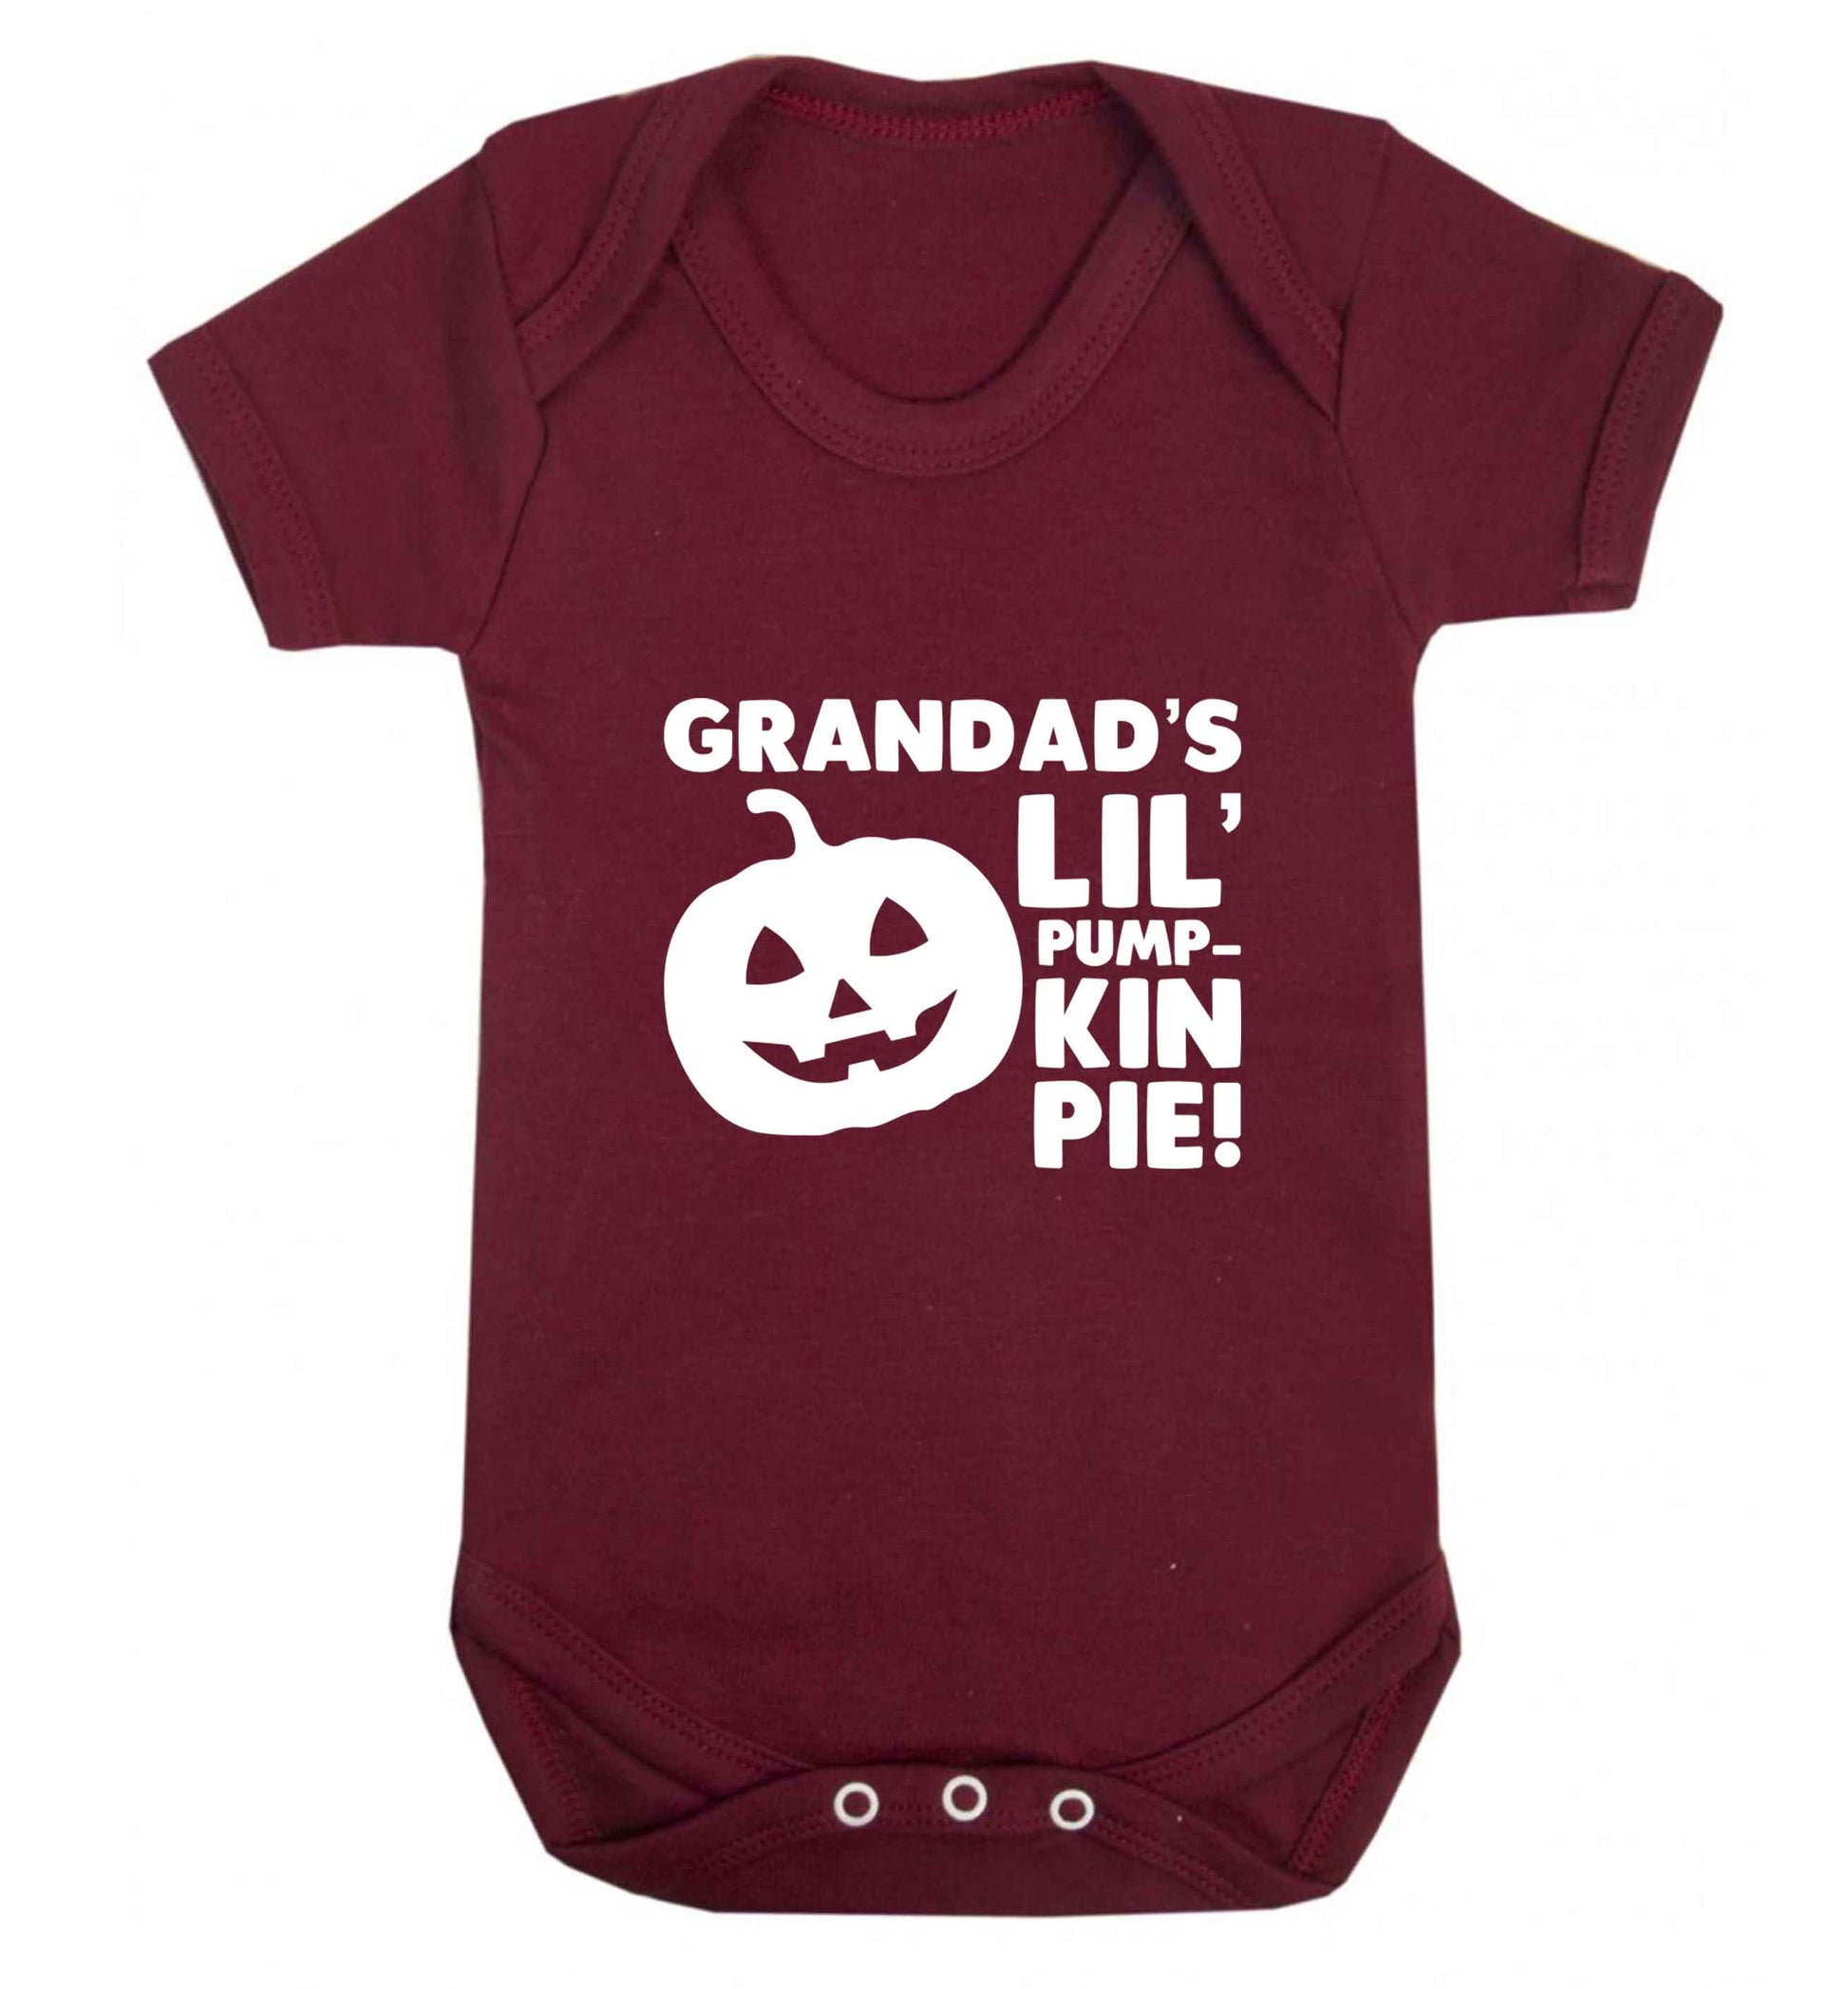 Grandad's lil' pumpkin pie baby vest maroon 18-24 months